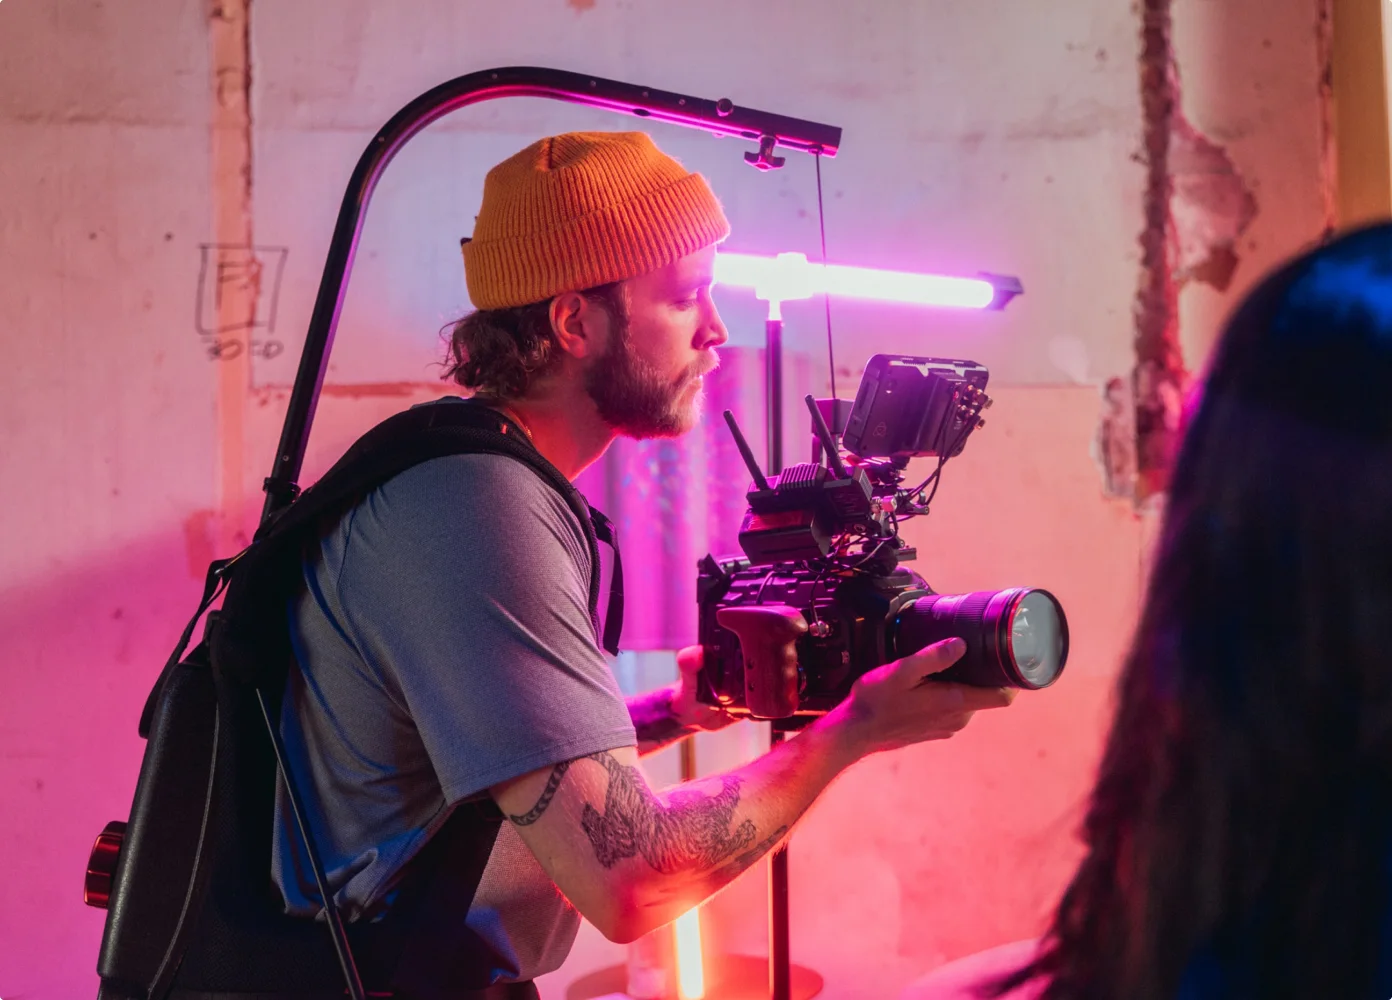 Ein Videofilmer mit gelber Strickmütze konzentriert sich intensiv auf eine hochwertige Kamera, umgeben von lebendigem rosa und violettem Licht